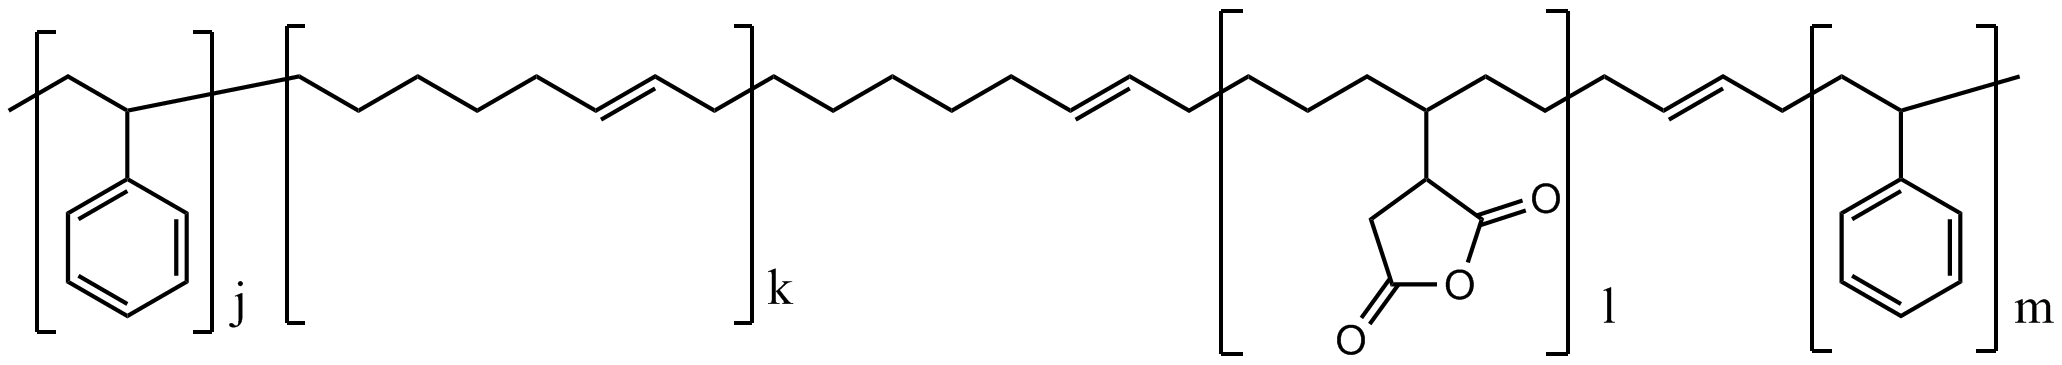 聚苯乙烯-block-聚(乙烯-ran-丁烯)-block-苯乙烯-graft-马来酸酐